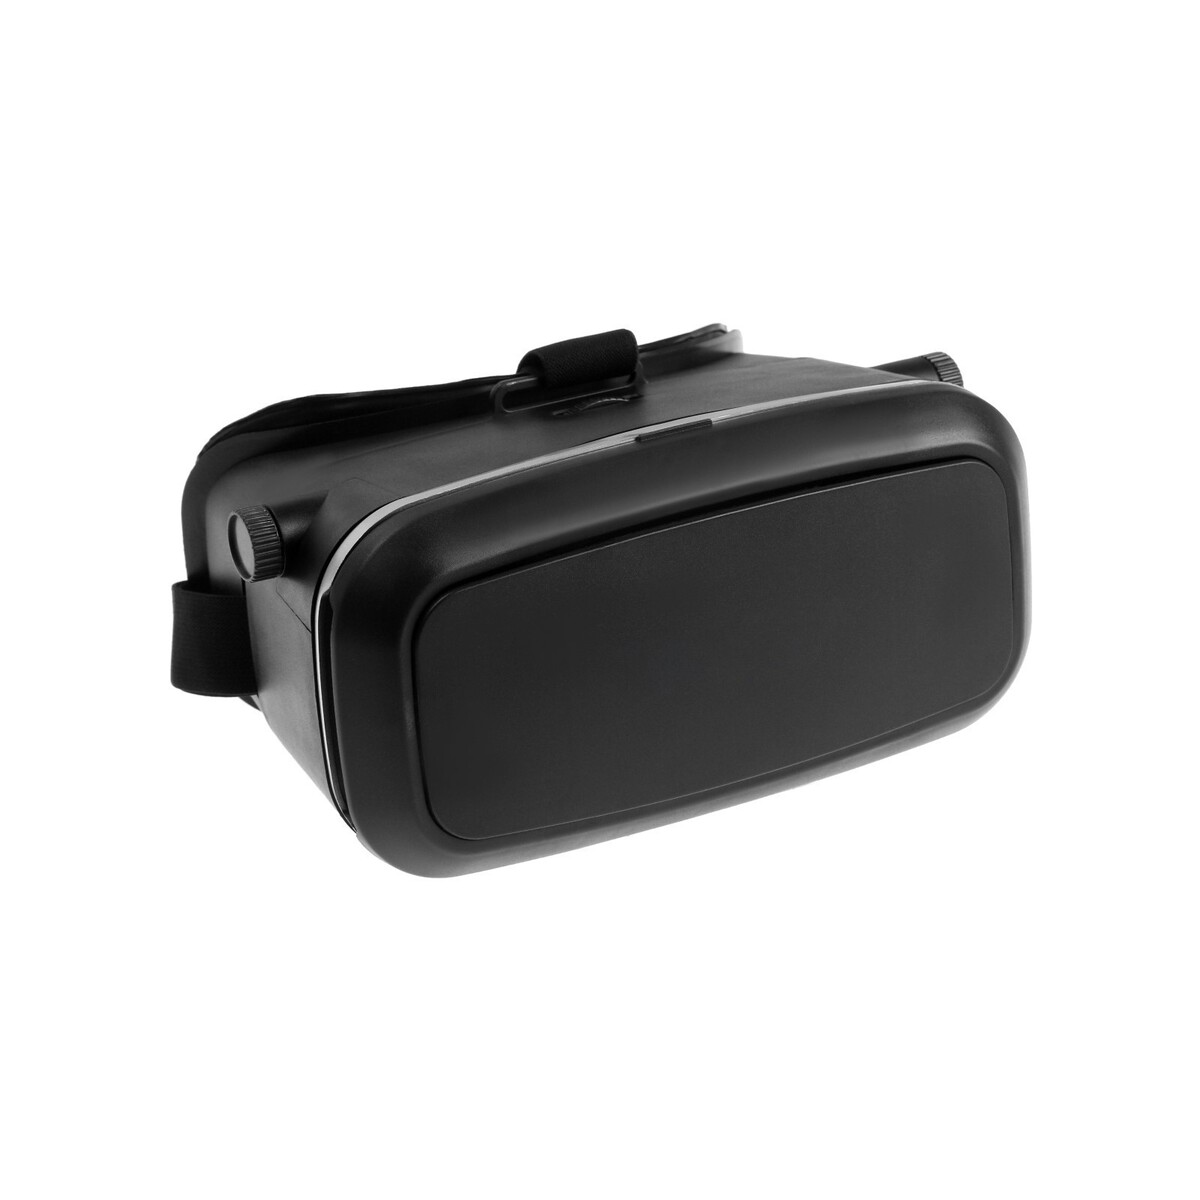 3d очки виртуальной реальности luazon, смартфоны до 6.5 на заре новой эры автобиография отца виртуальной реальности